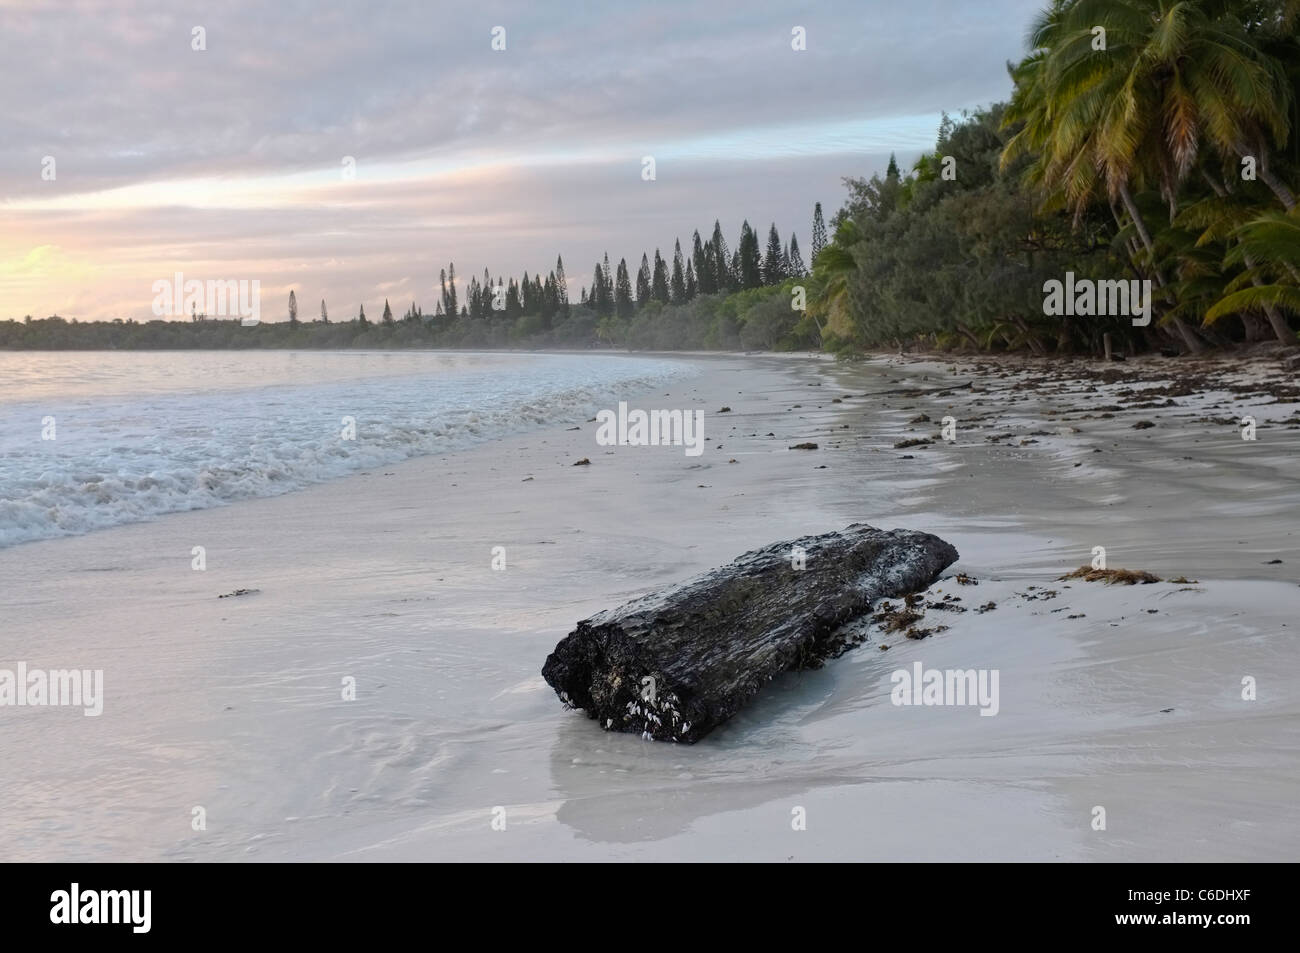 Kuto Beach at Dawn, Isle of Pines, New Caledonia Stock Photo